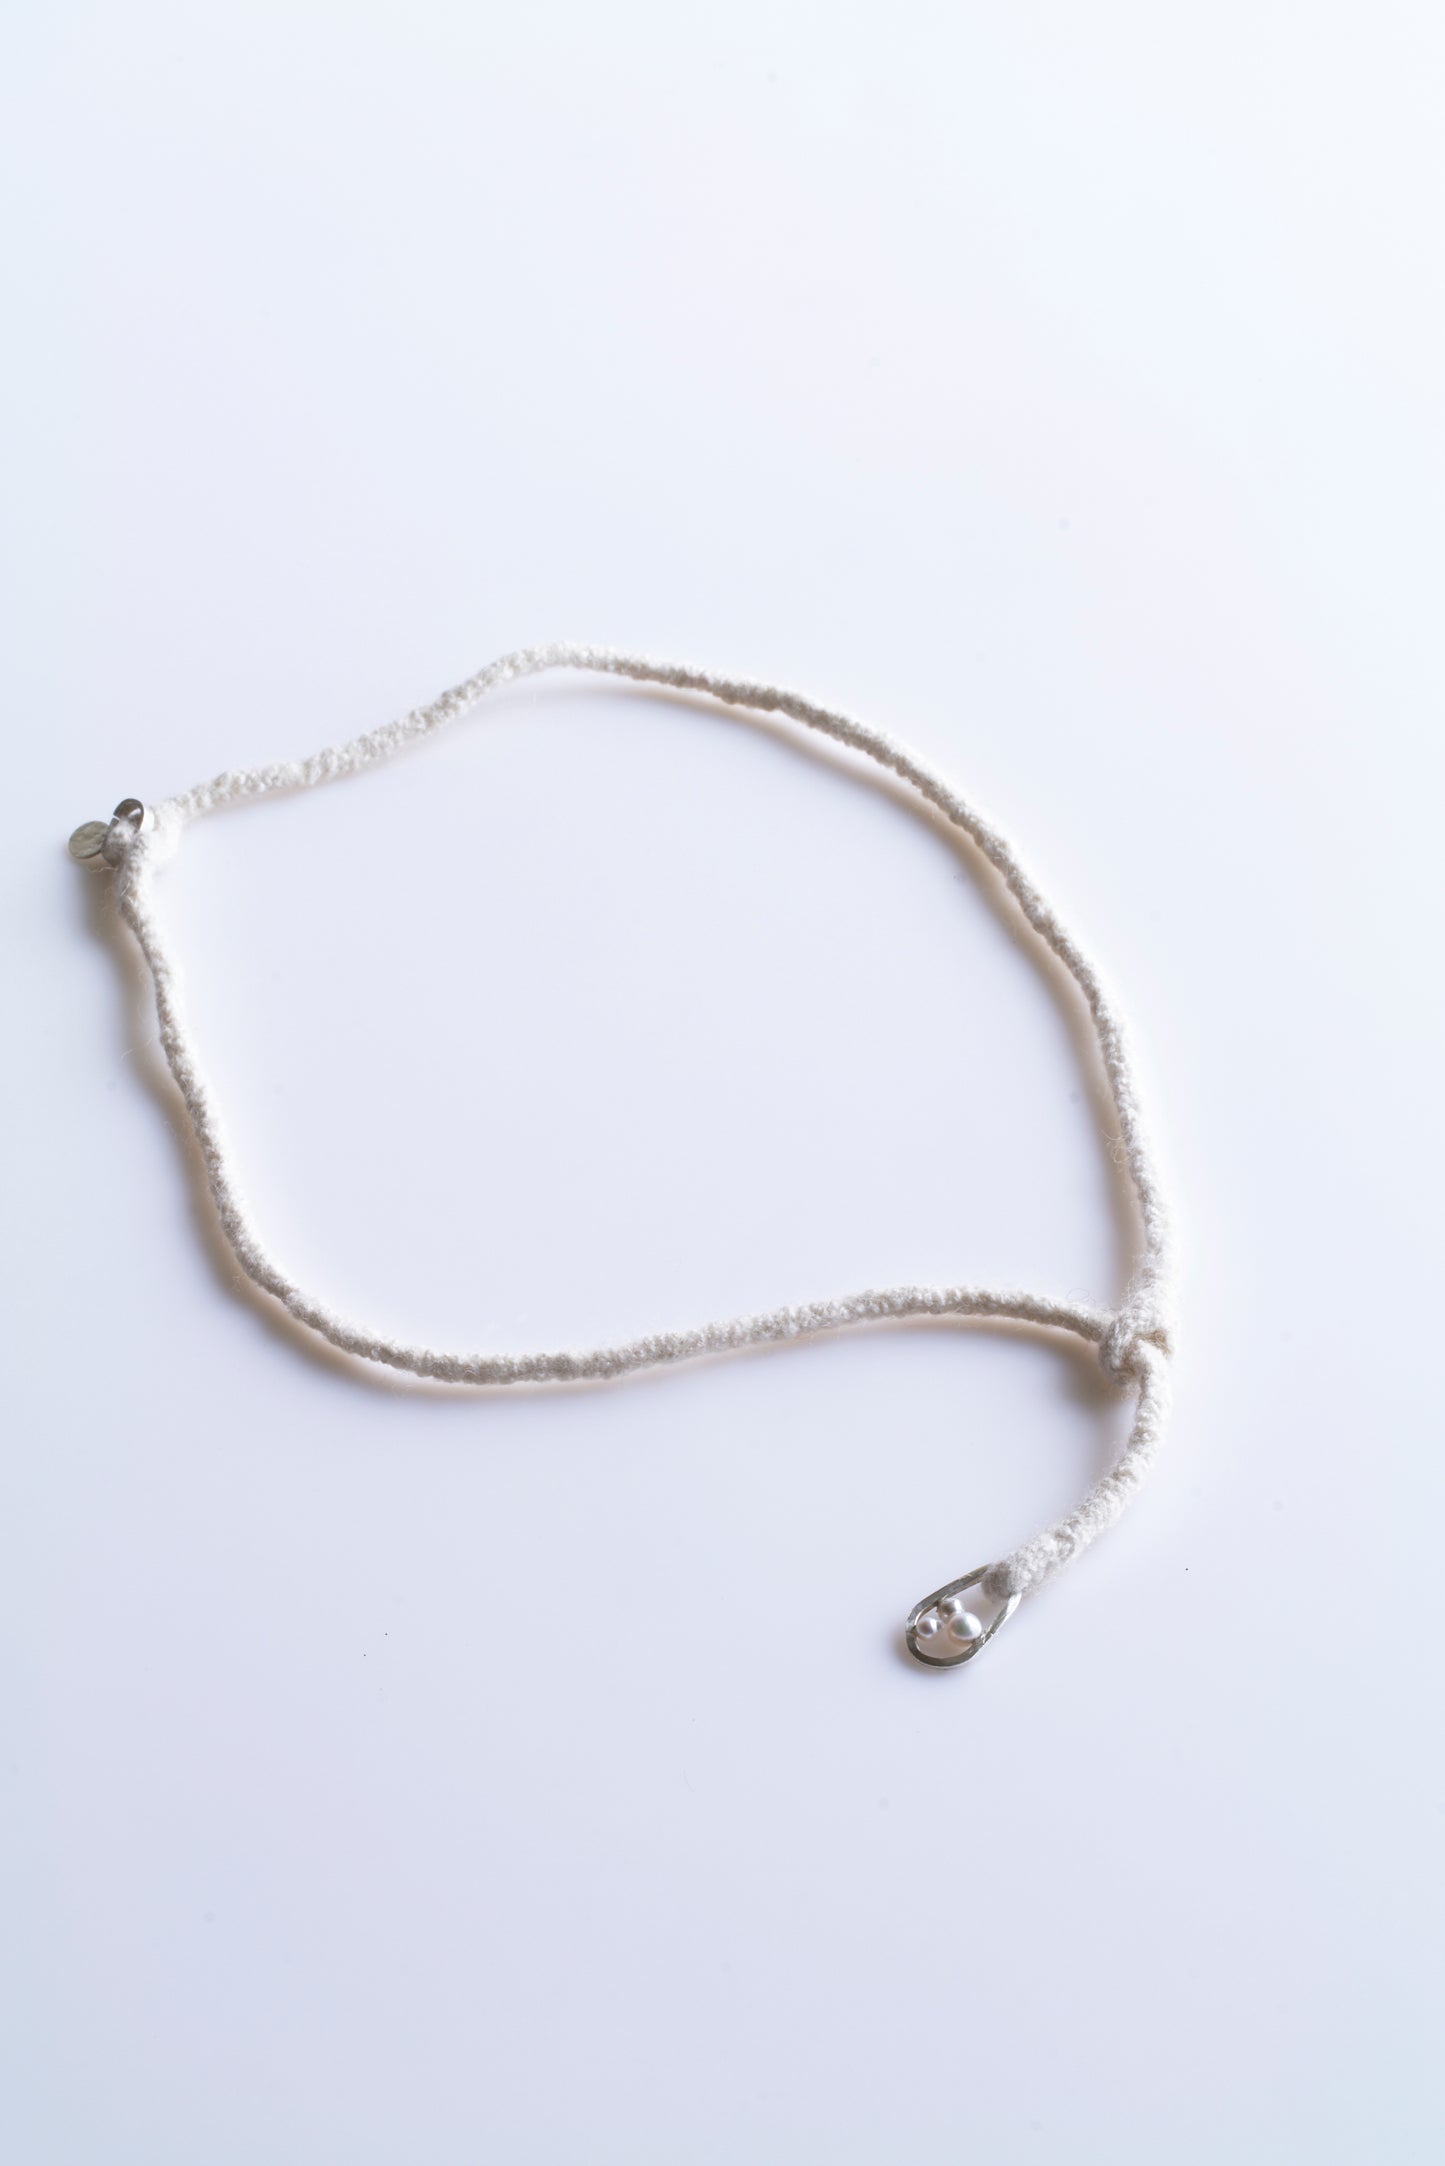 Yarn Necklace -Ivory white